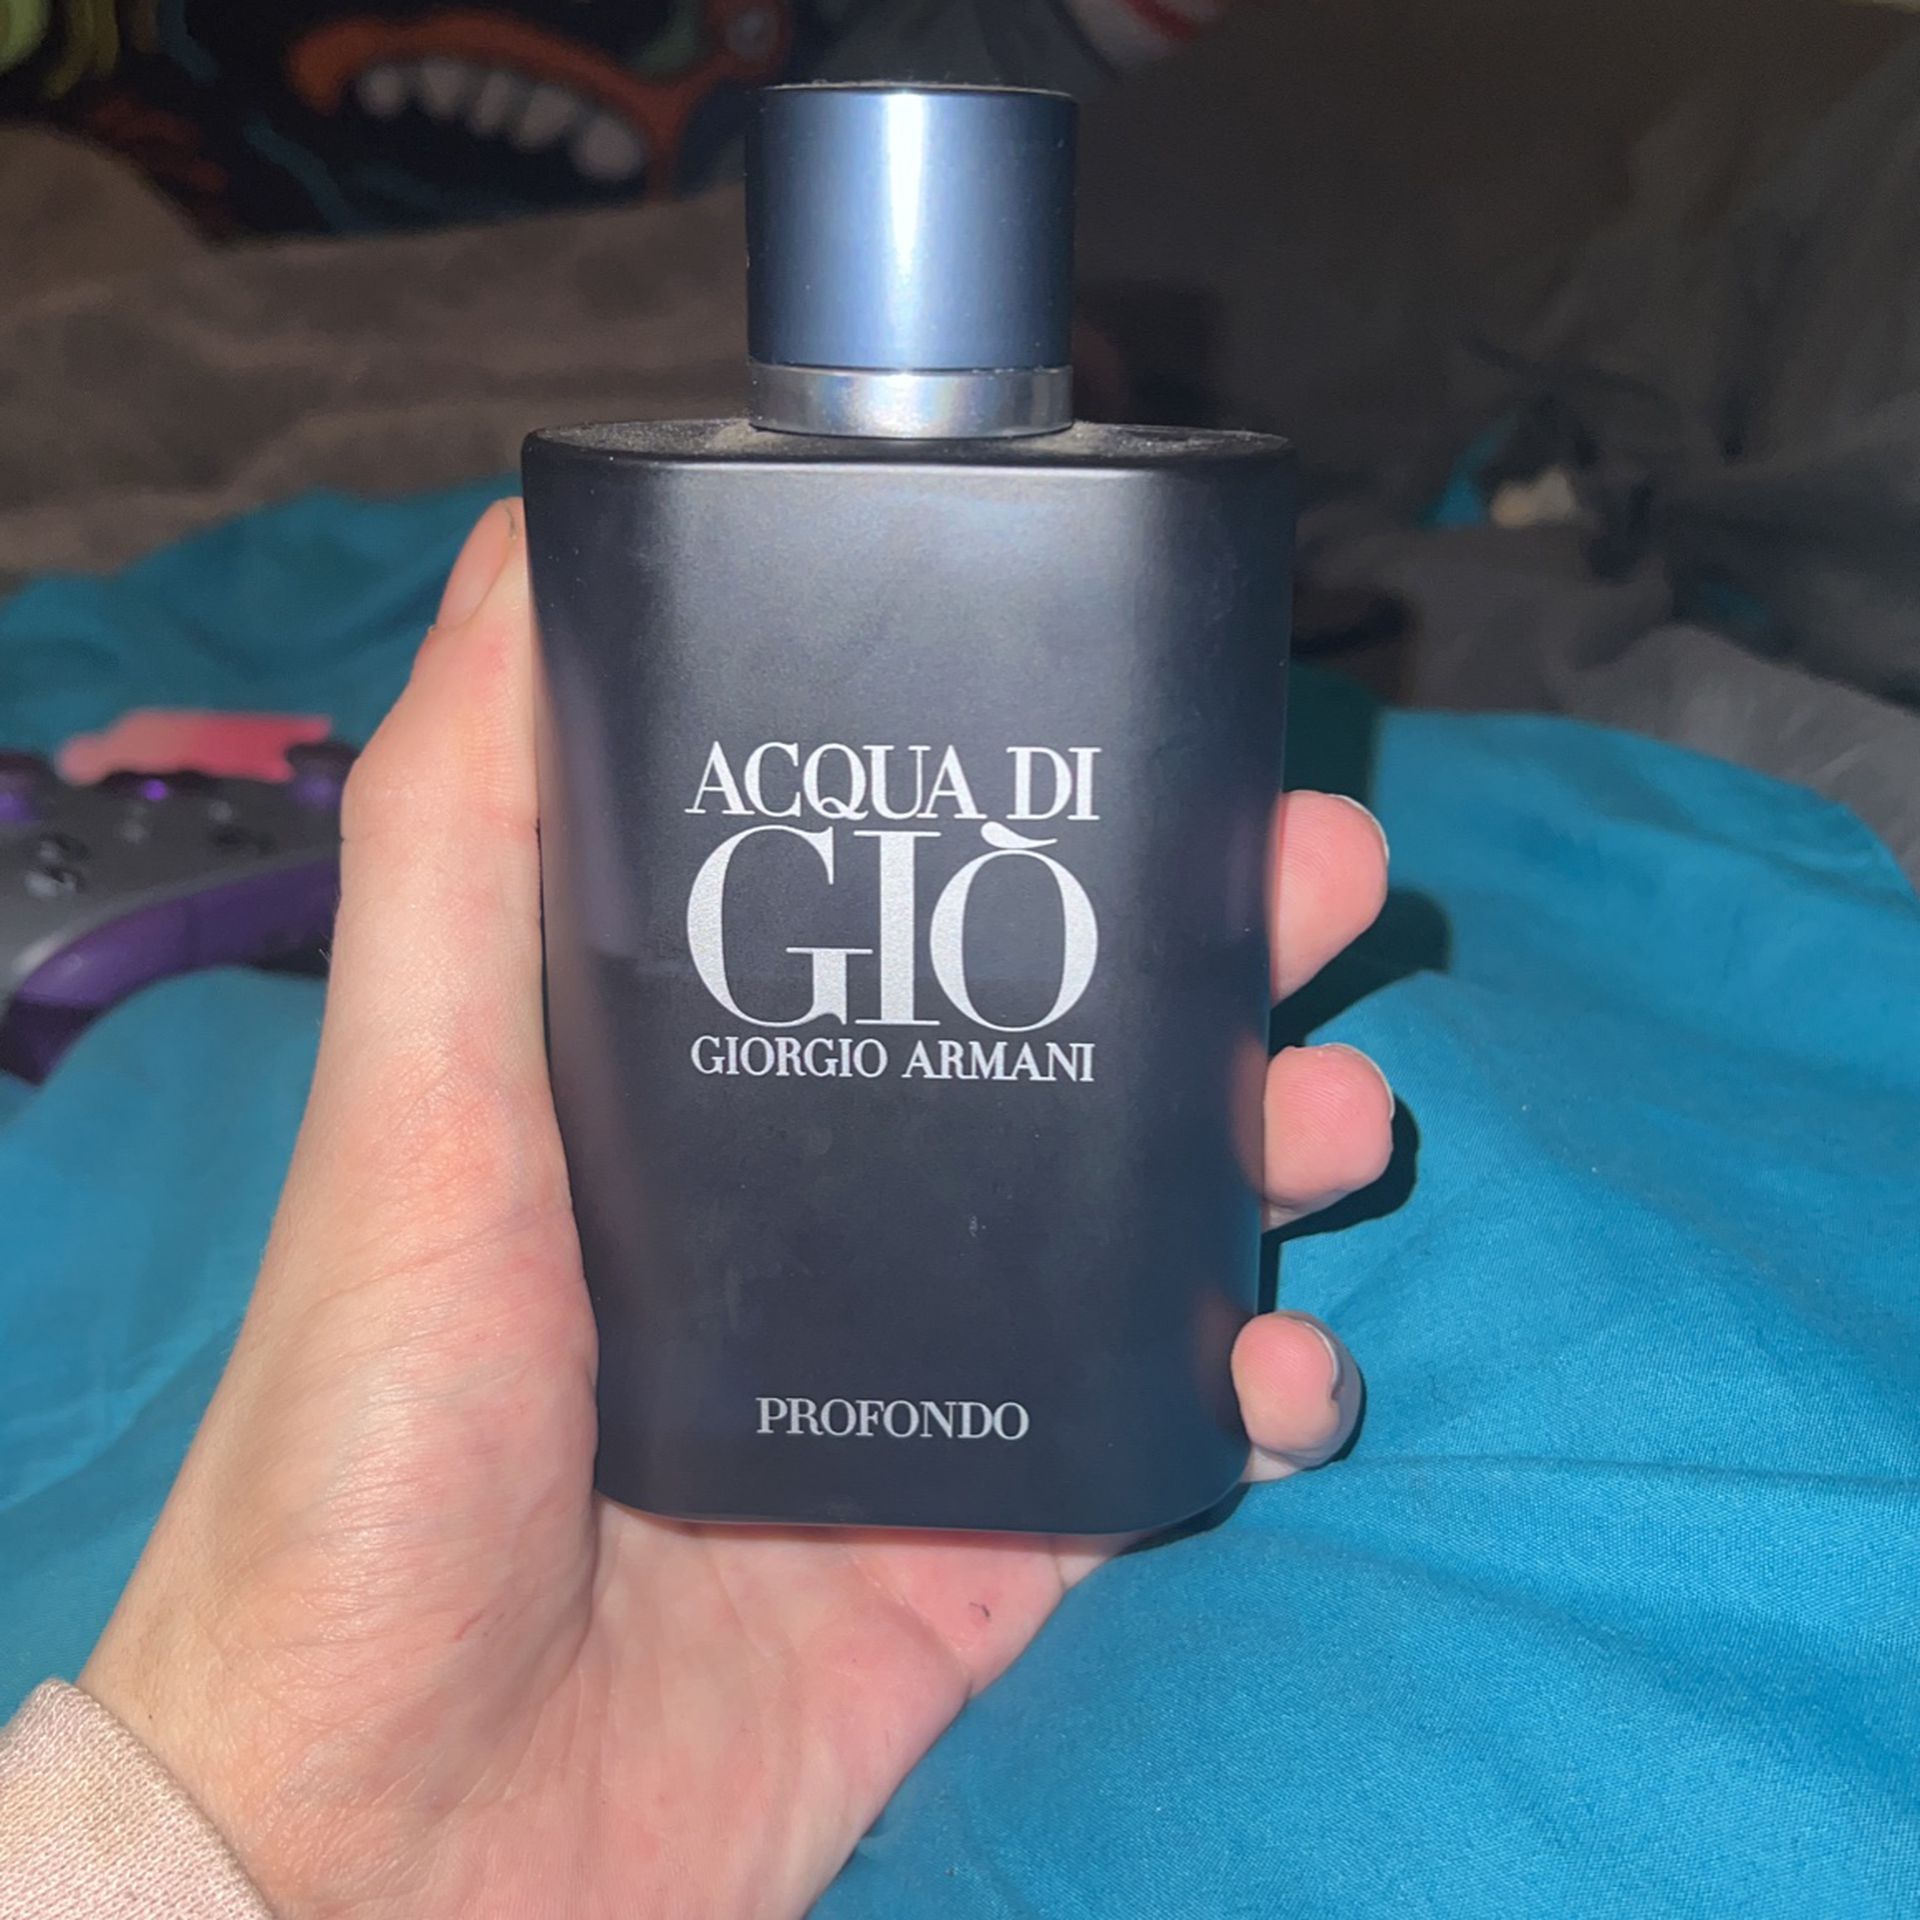 Aqua Di Gio